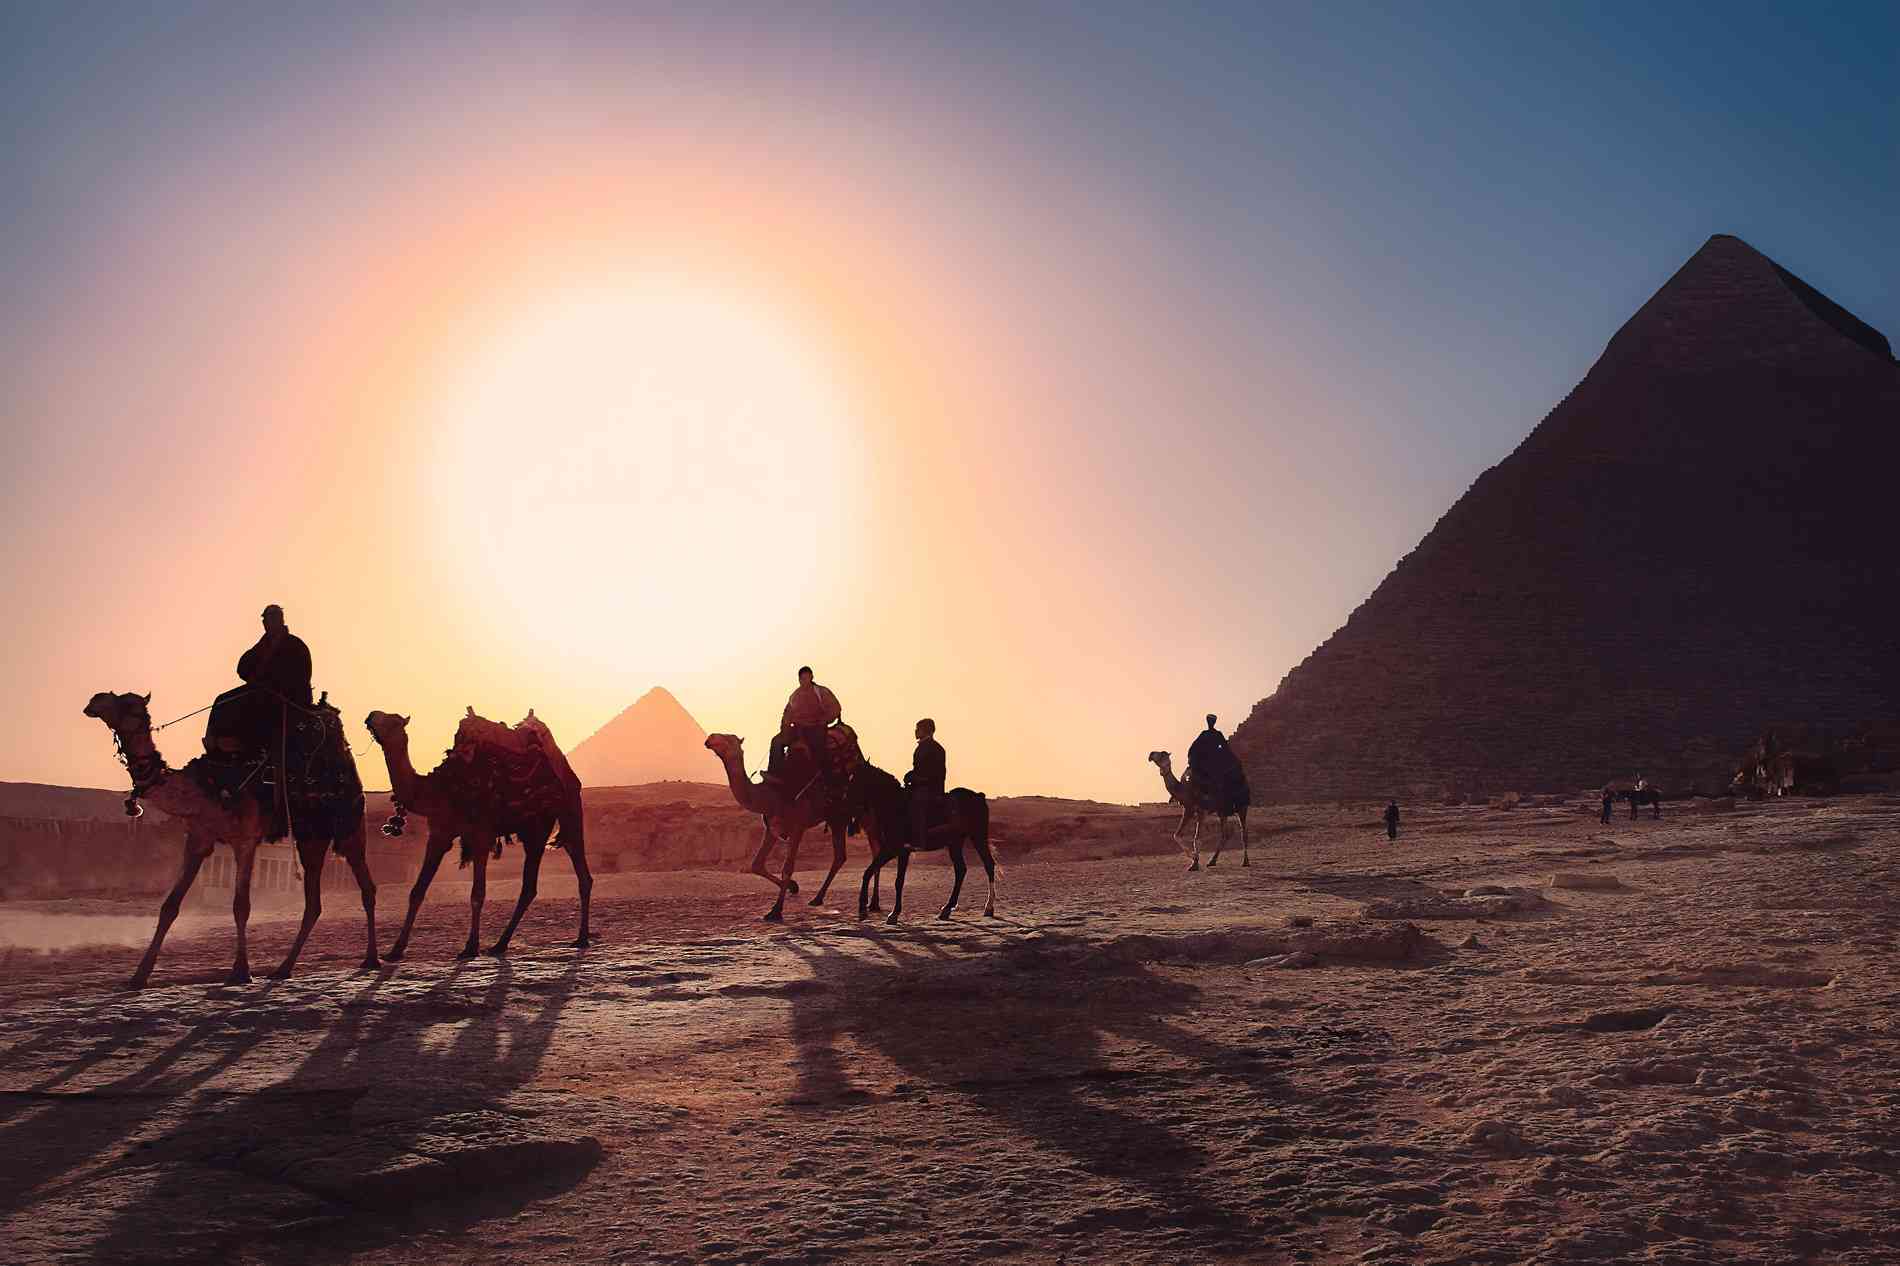 les vacances en egypte